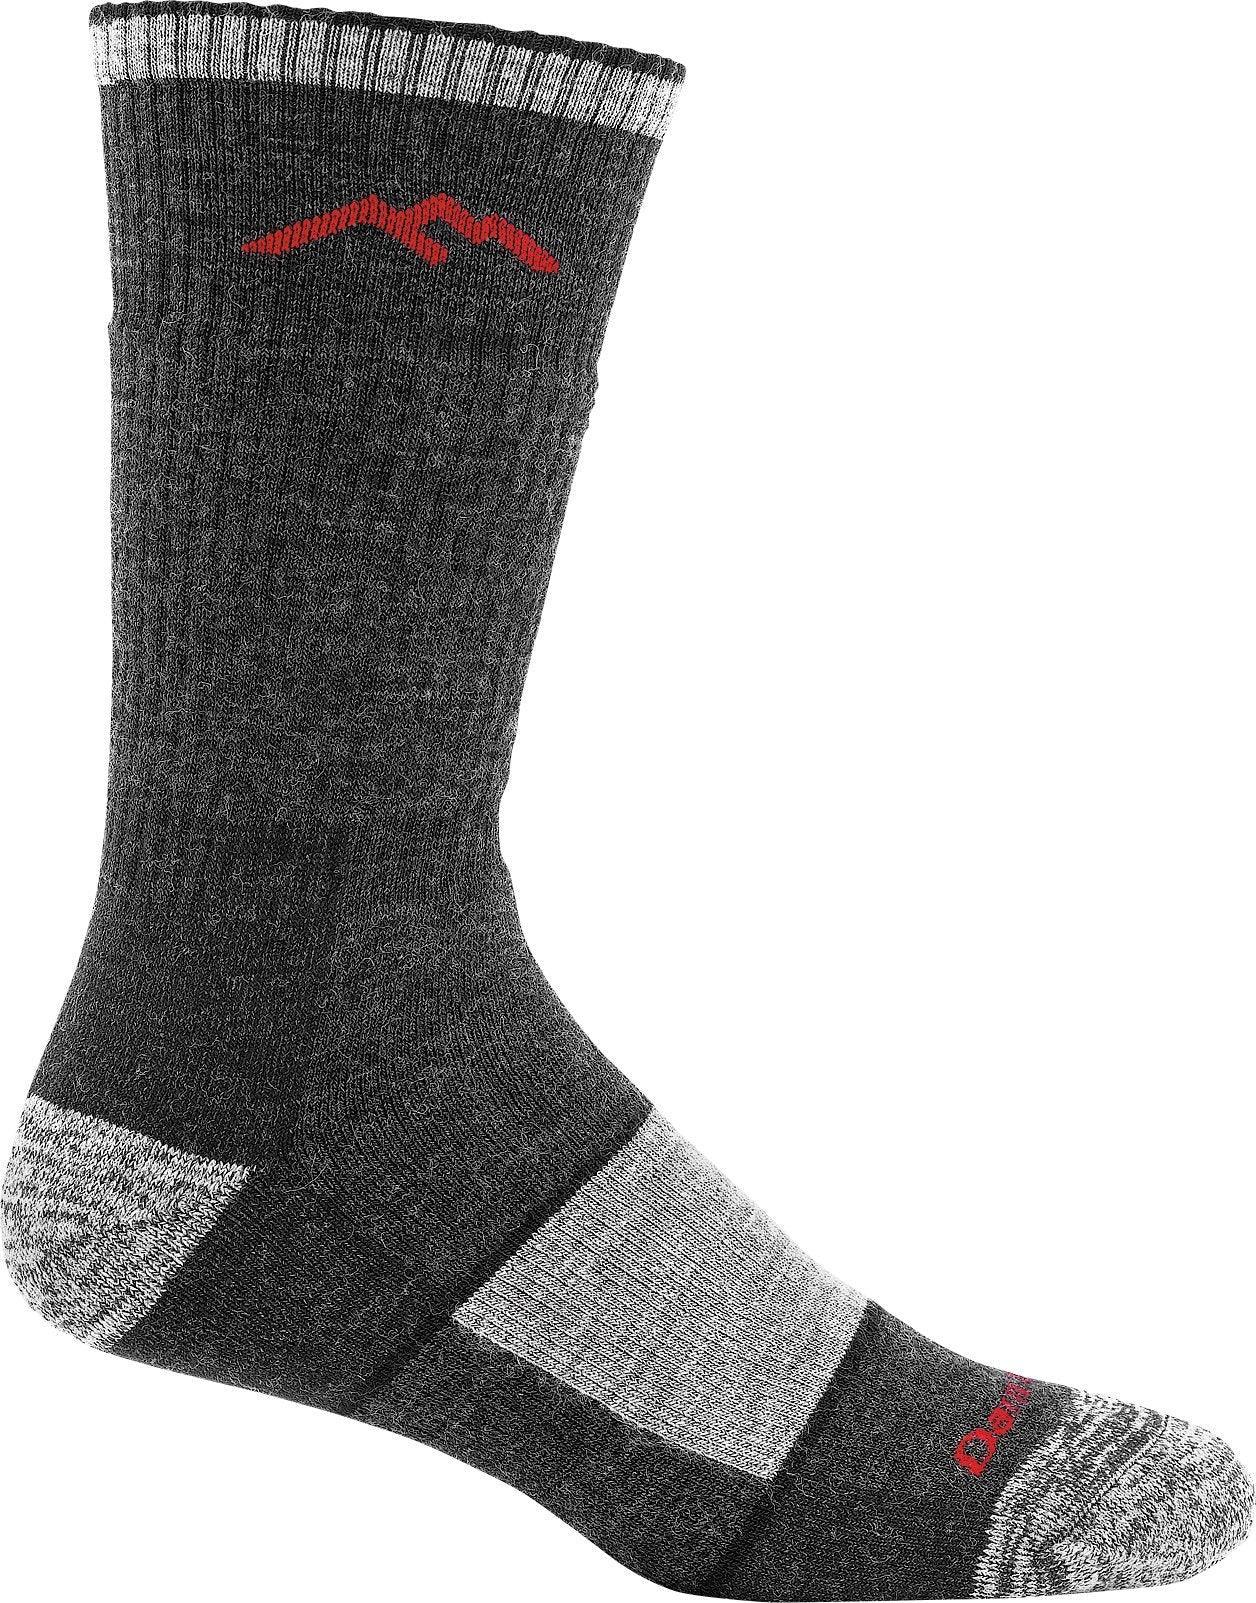 Hiker, Men's Boot Sock Full Cushion #1405 - Darn Tough - The Sock Monster